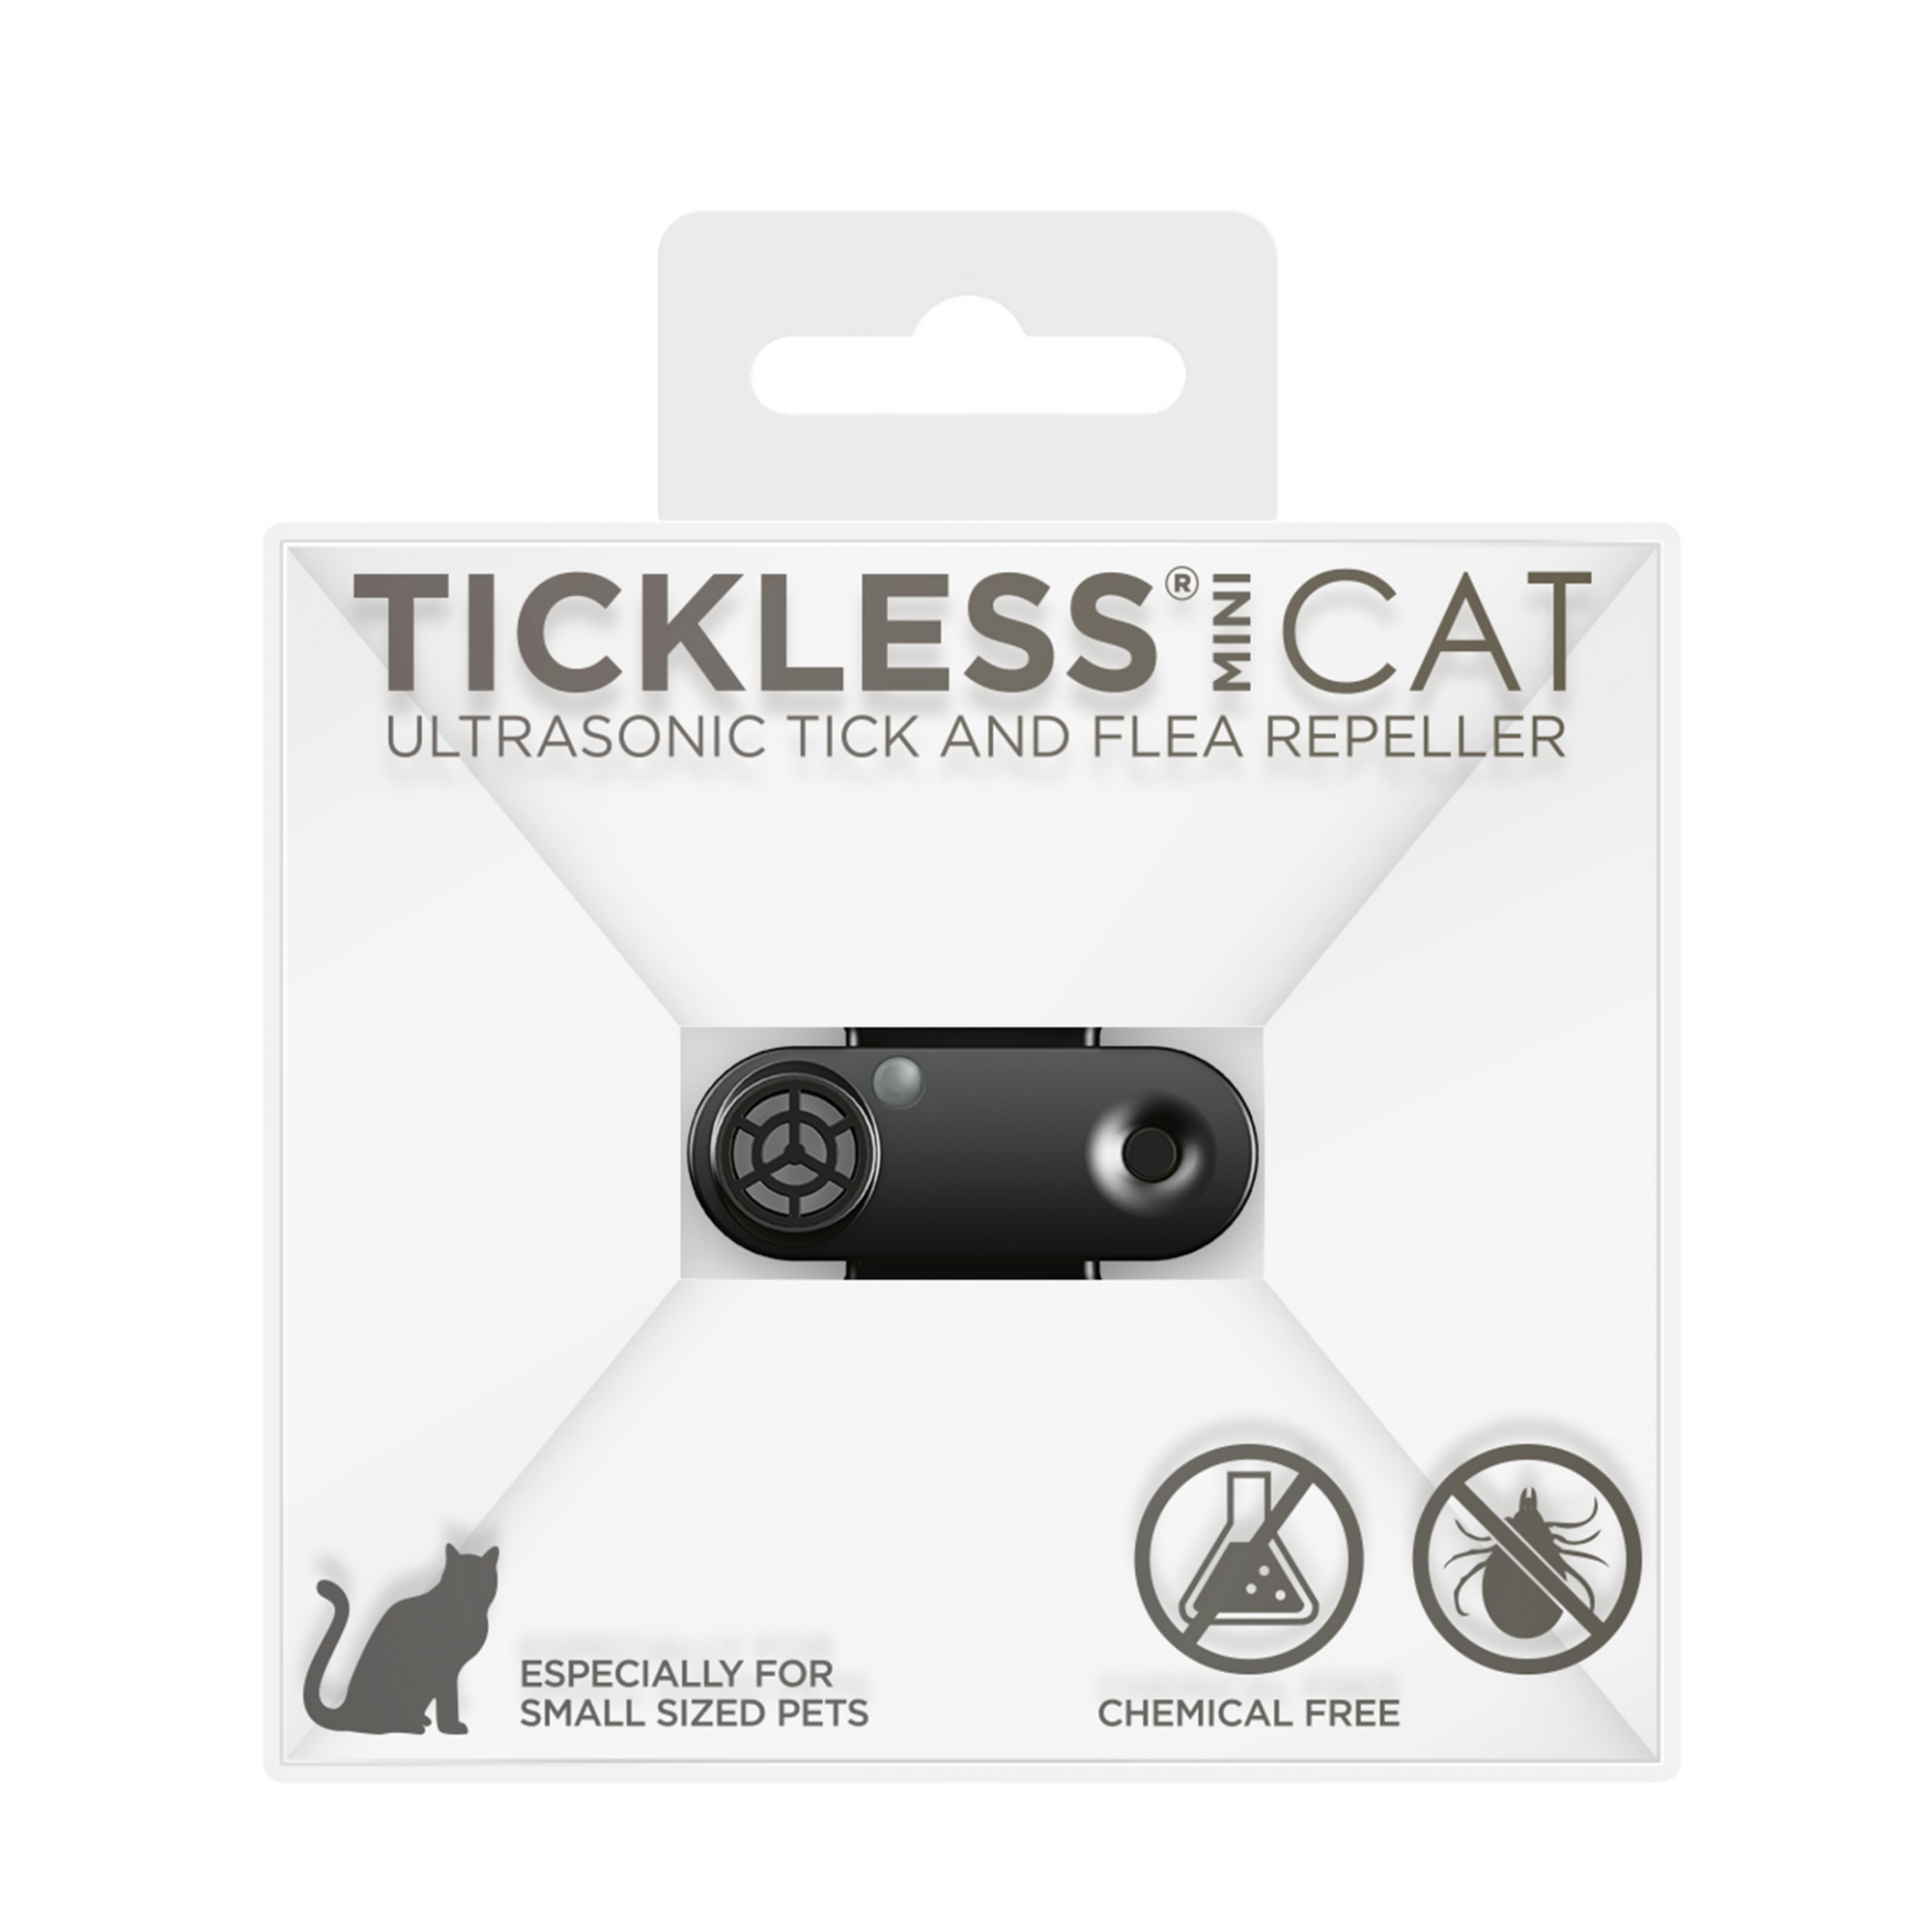 Tickless Mini Cat wiederaufladbar – Mehrere Farben